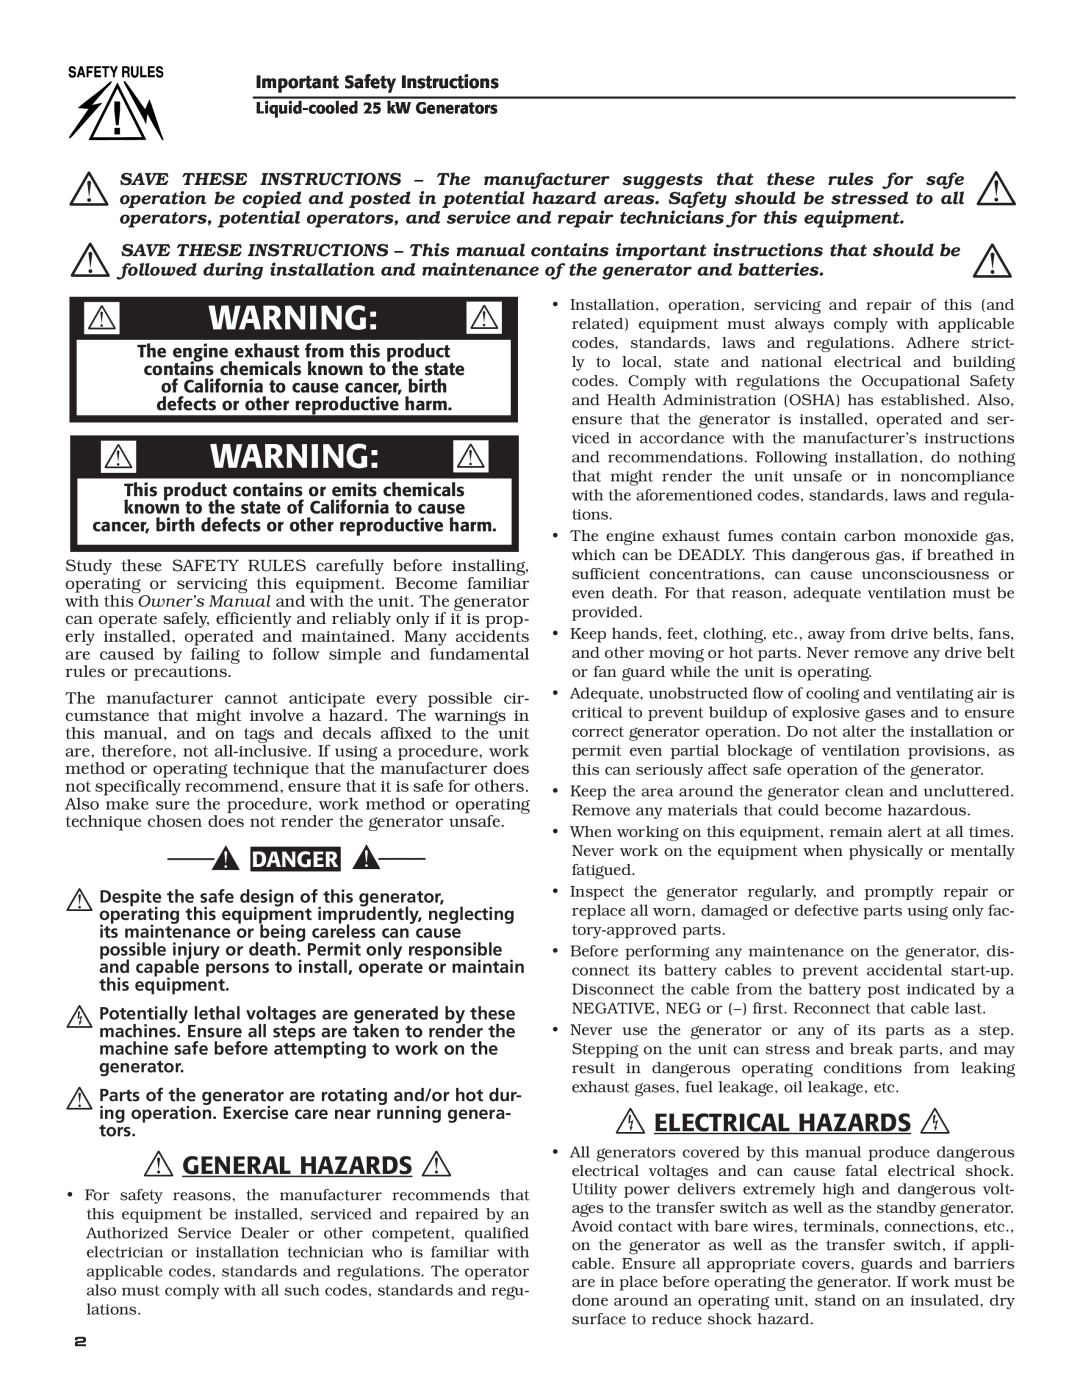 Generac 005031-2 owner manual  General Hazards, Electrical Hazards, Warning , Danger 